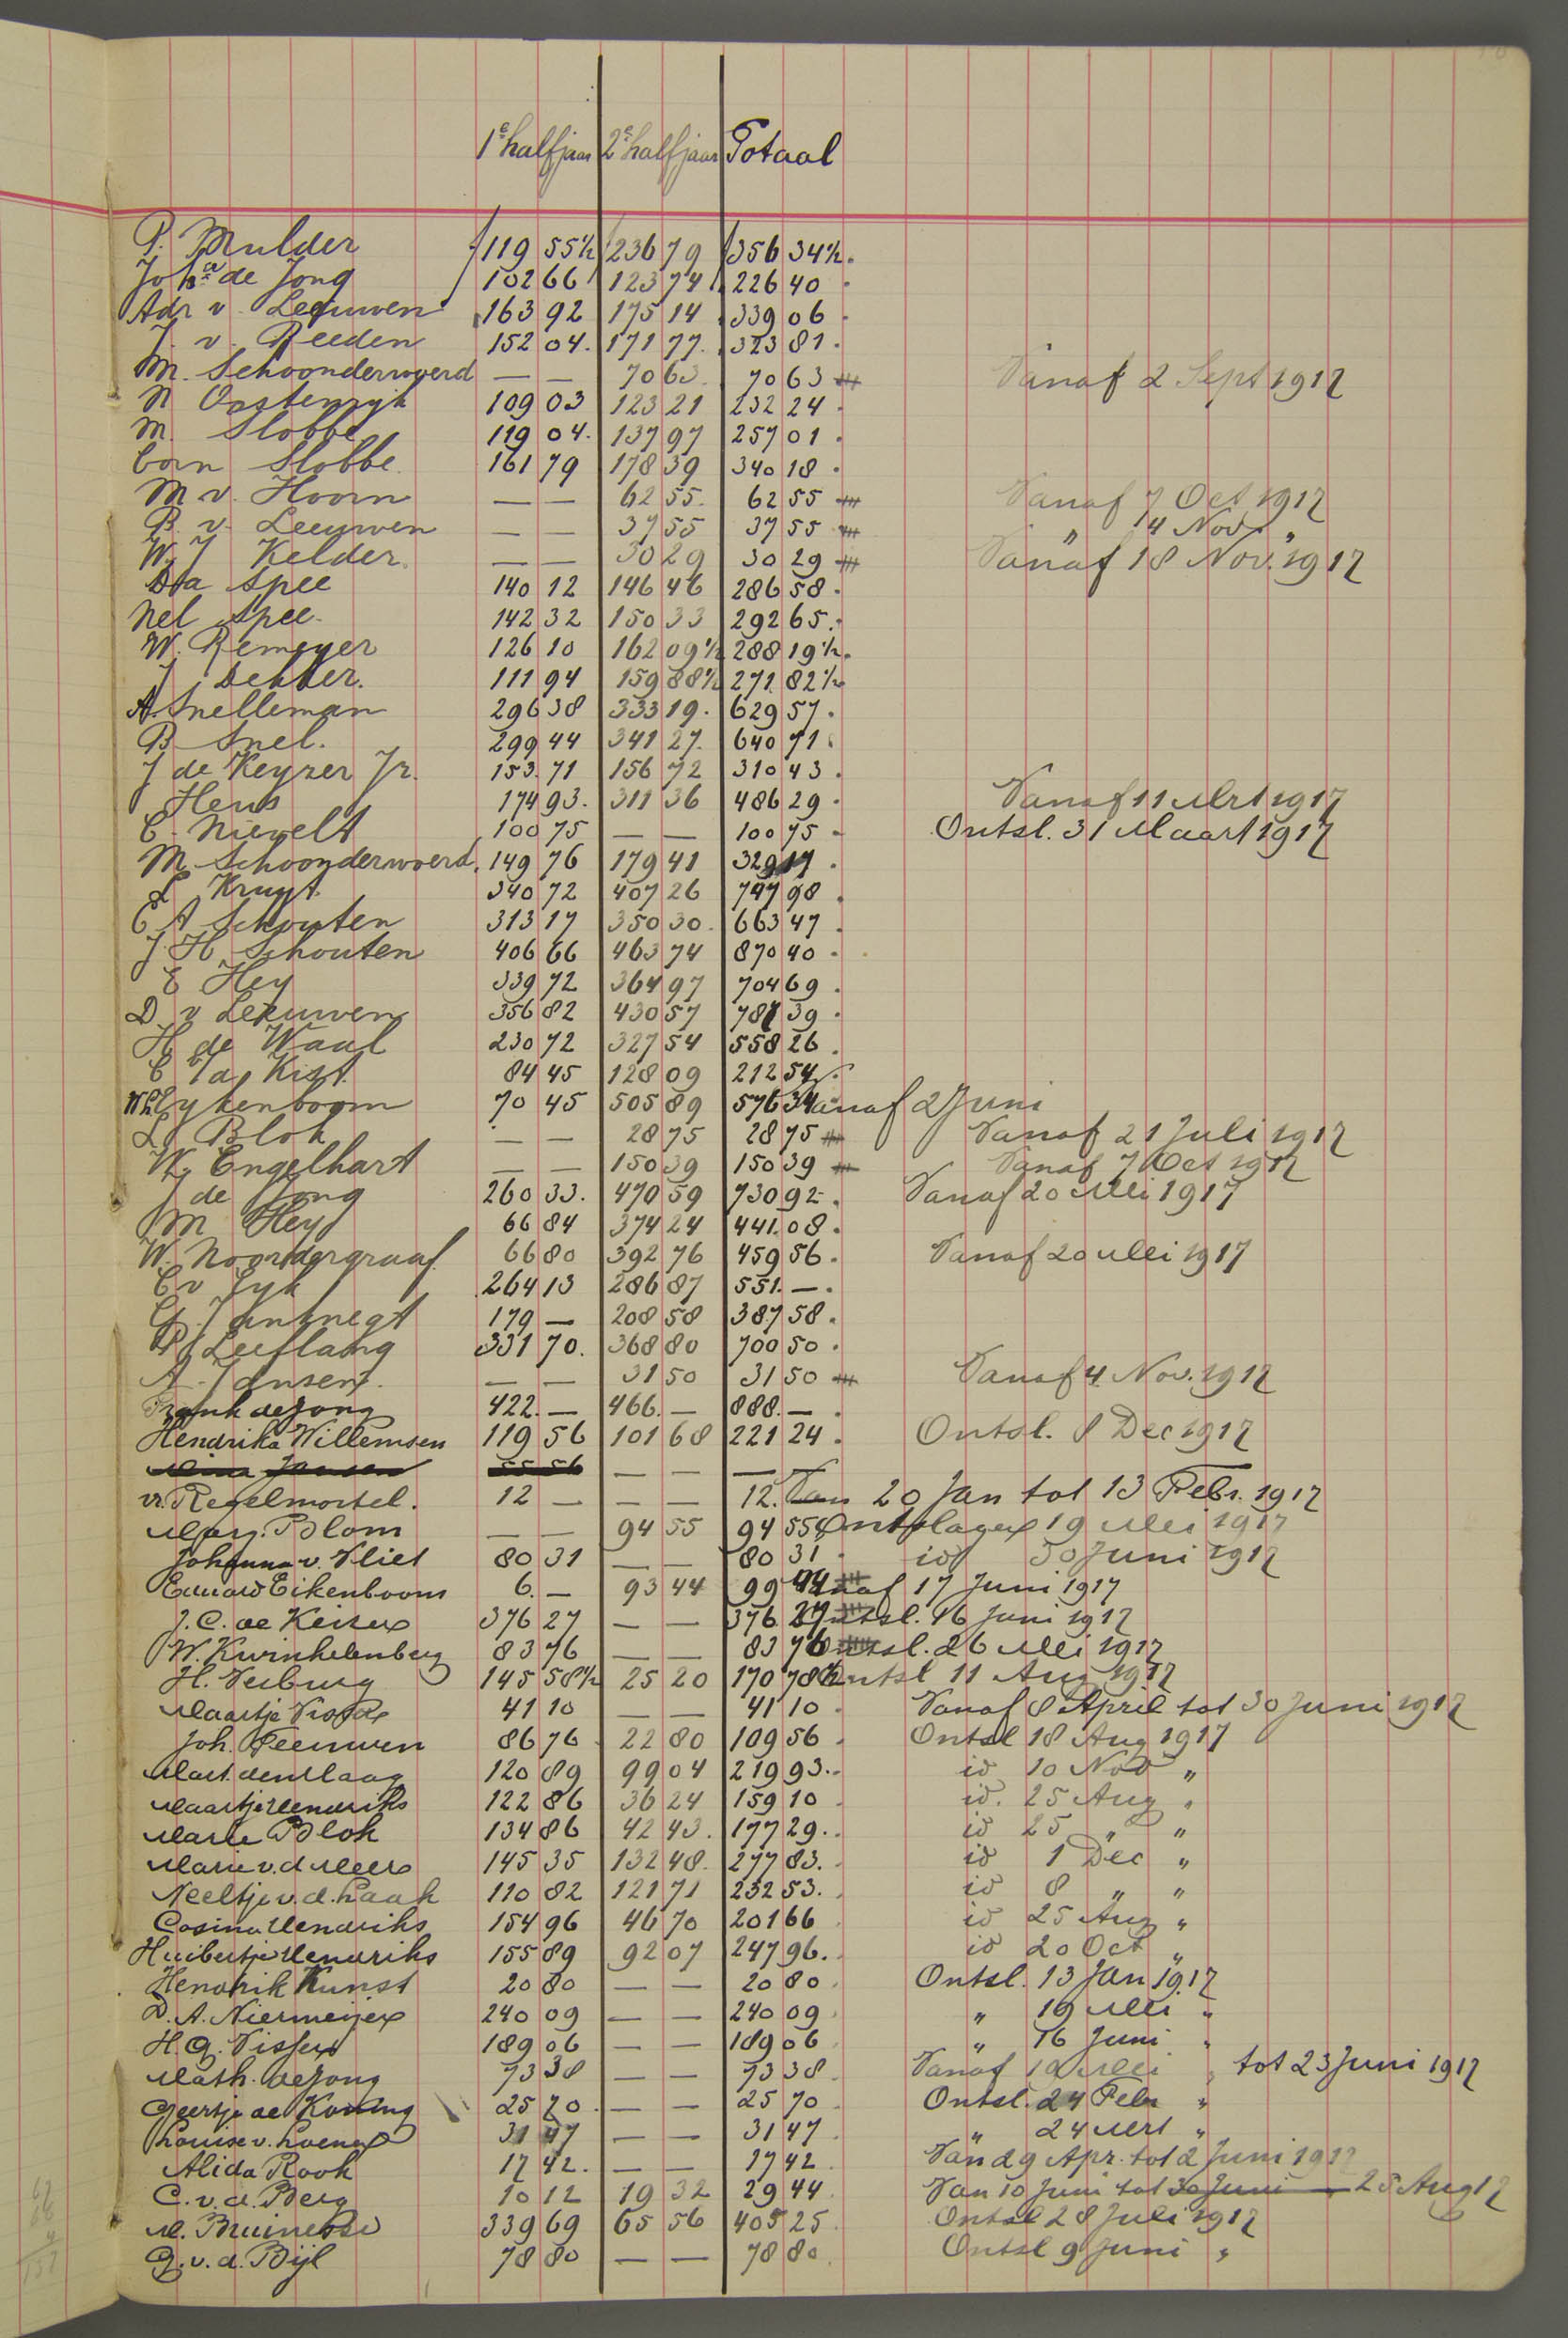 19-10.045-archiefstuk-goedewaagen-loonboek-tremsters-1917-109